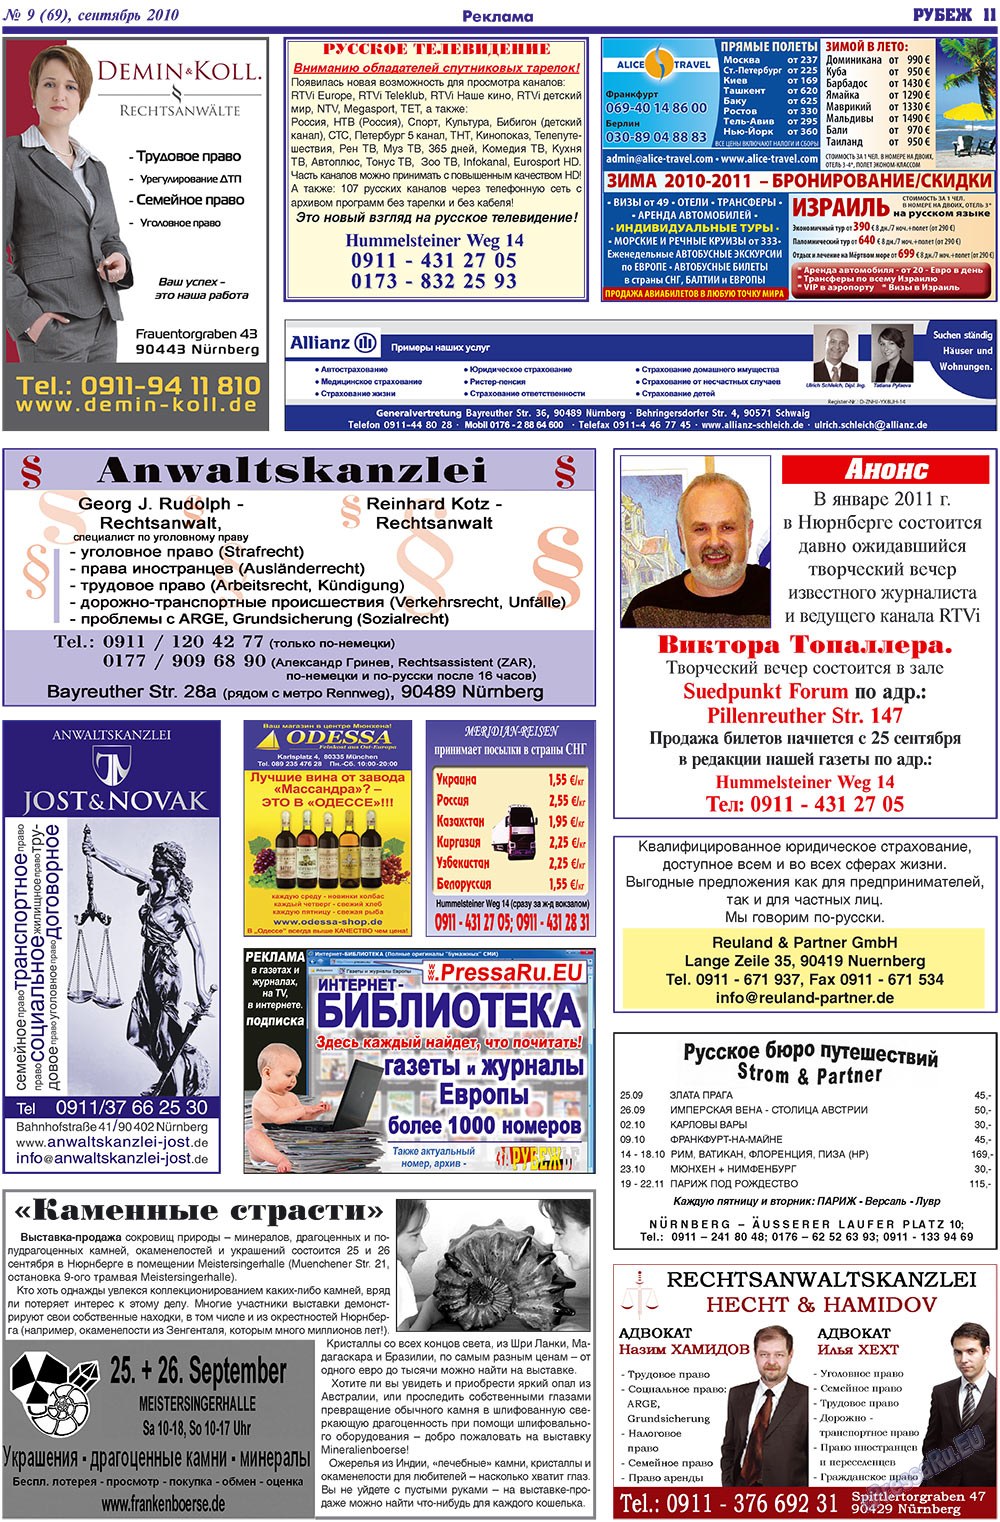 Рубеж (газета). 2010 год, номер 9, стр. 11